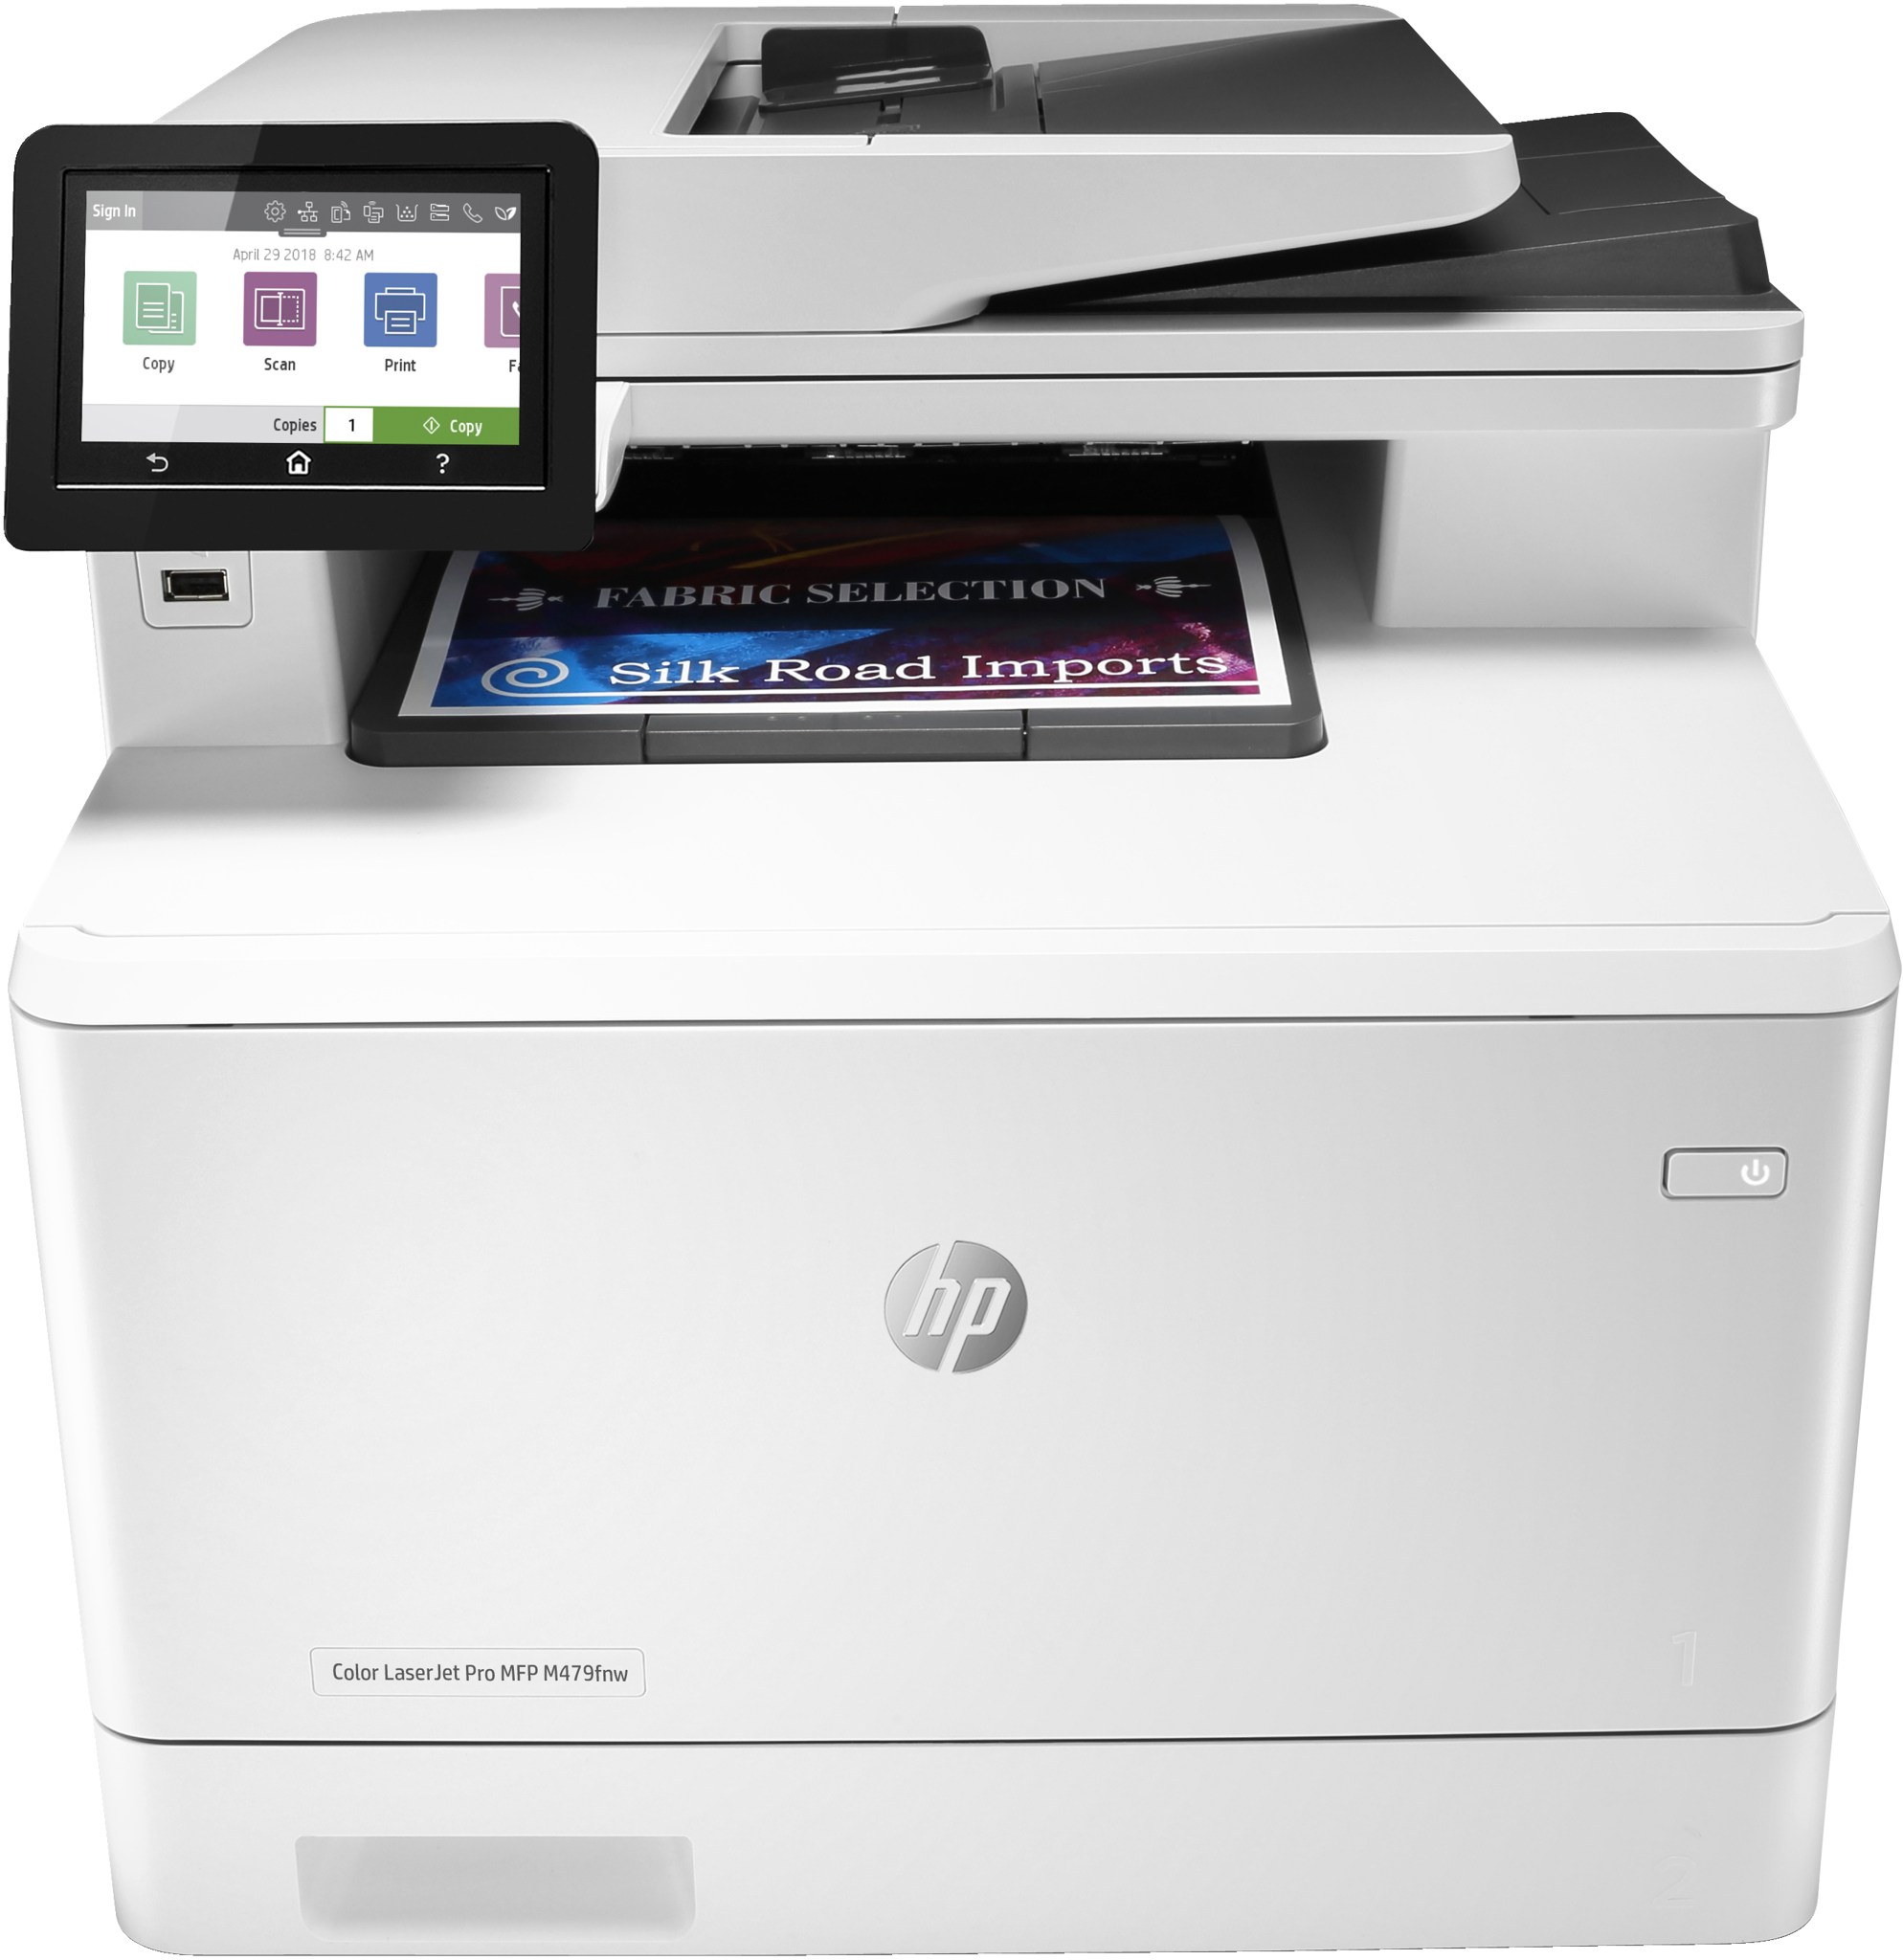 Bild von HP Color LaserJet Pro MFP M479fnw - Drucken - Kopieren - Scannen - Faxen - Mailen - Scannen an E-Mail/PDF; Automatische - geglättete Dokumentenzuführung (50 Blatt) - Laser - Farbdruck - 600 x 600 DPI - A4 - Direktdruck - Grau - Weiß